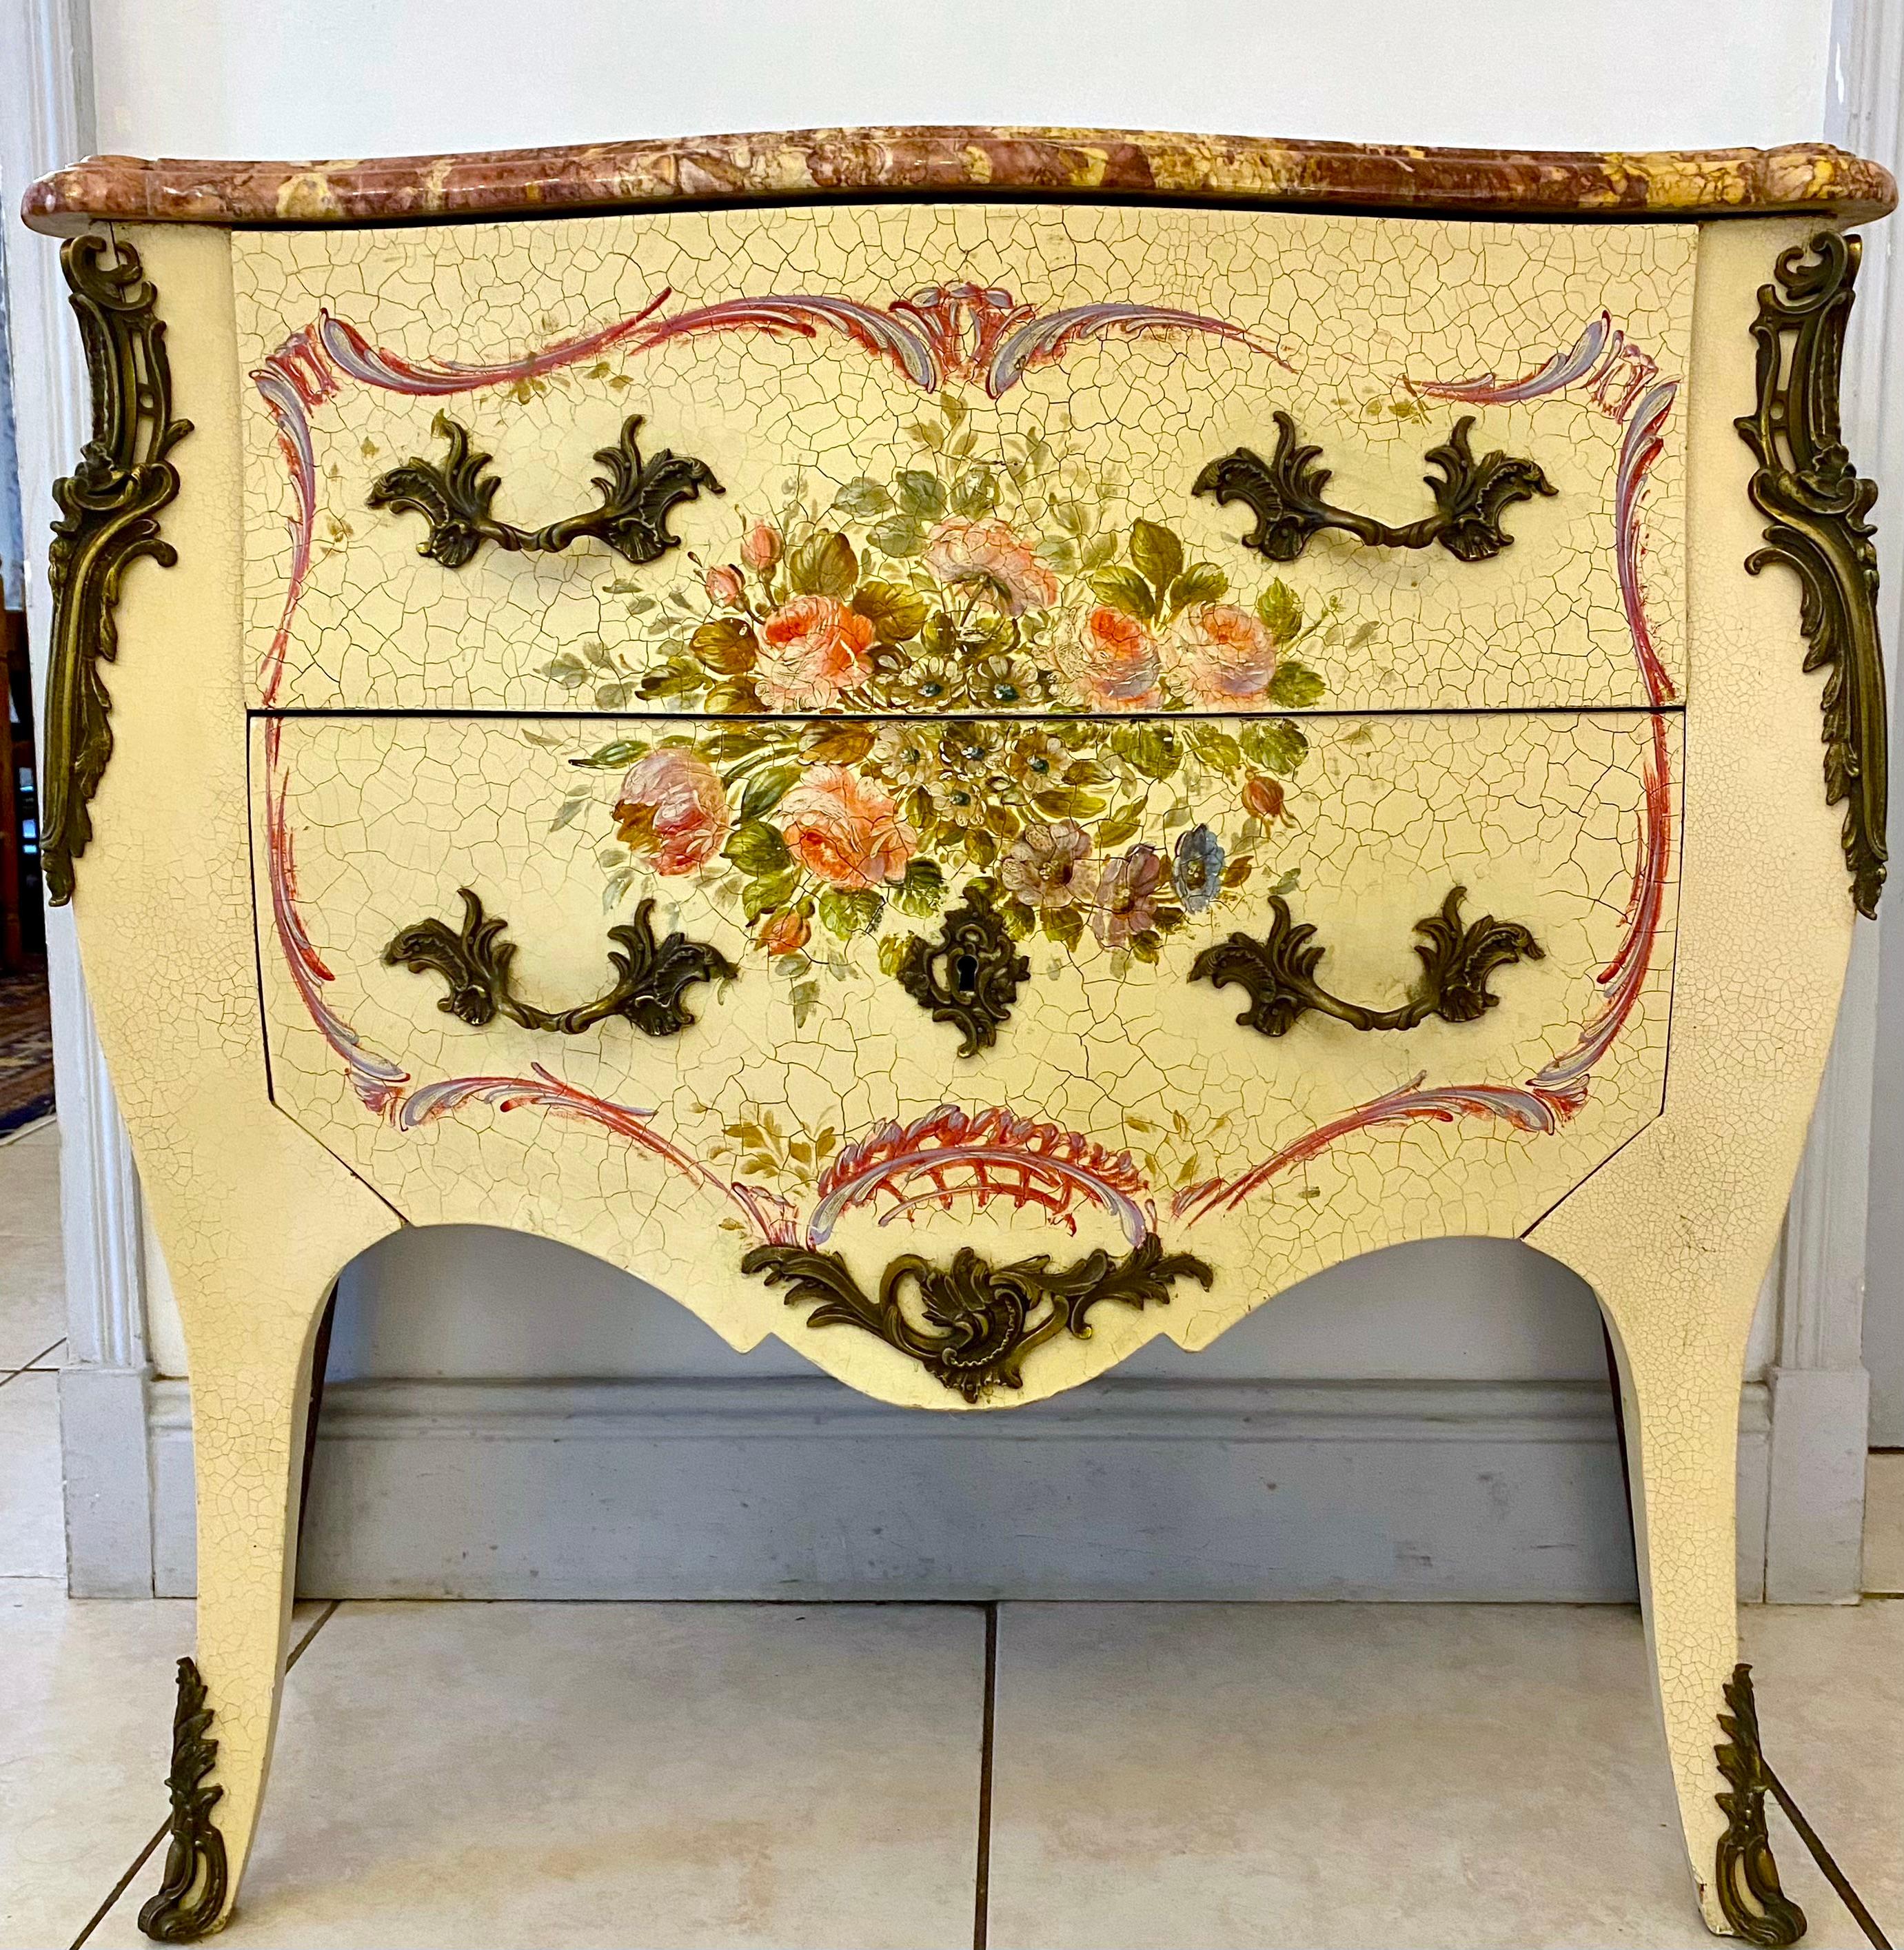 Commode italienne, vénitienne ou génoise, en bois peint avec un très joli décor floral de la fin du XIXe siècle dans le style Louis XV.
Il s'ouvre sur deux tiroirs et possède des pieds en sabre.
Le dessus est habillé de marbre couleur fleur de